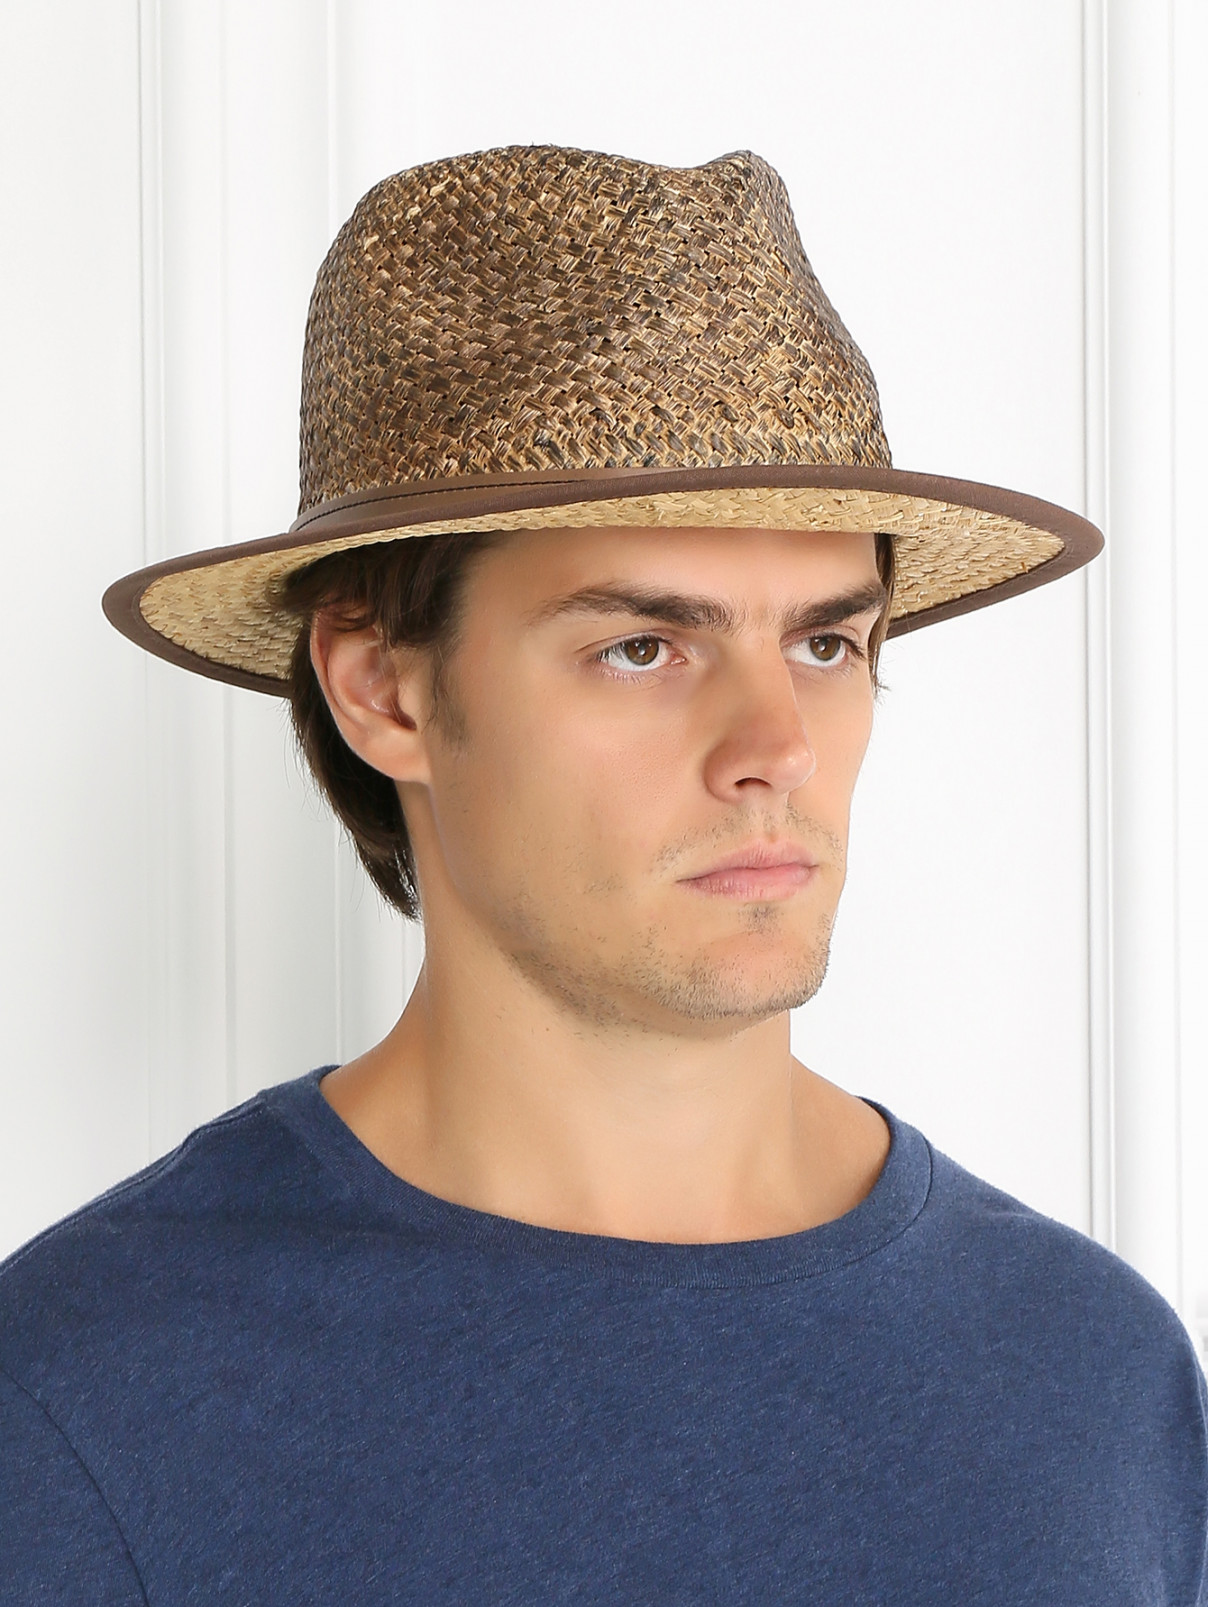 Шляпа соломенная с контрастной вставкой Stetson  –  Модель Общий вид  – Цвет:  Бежевый